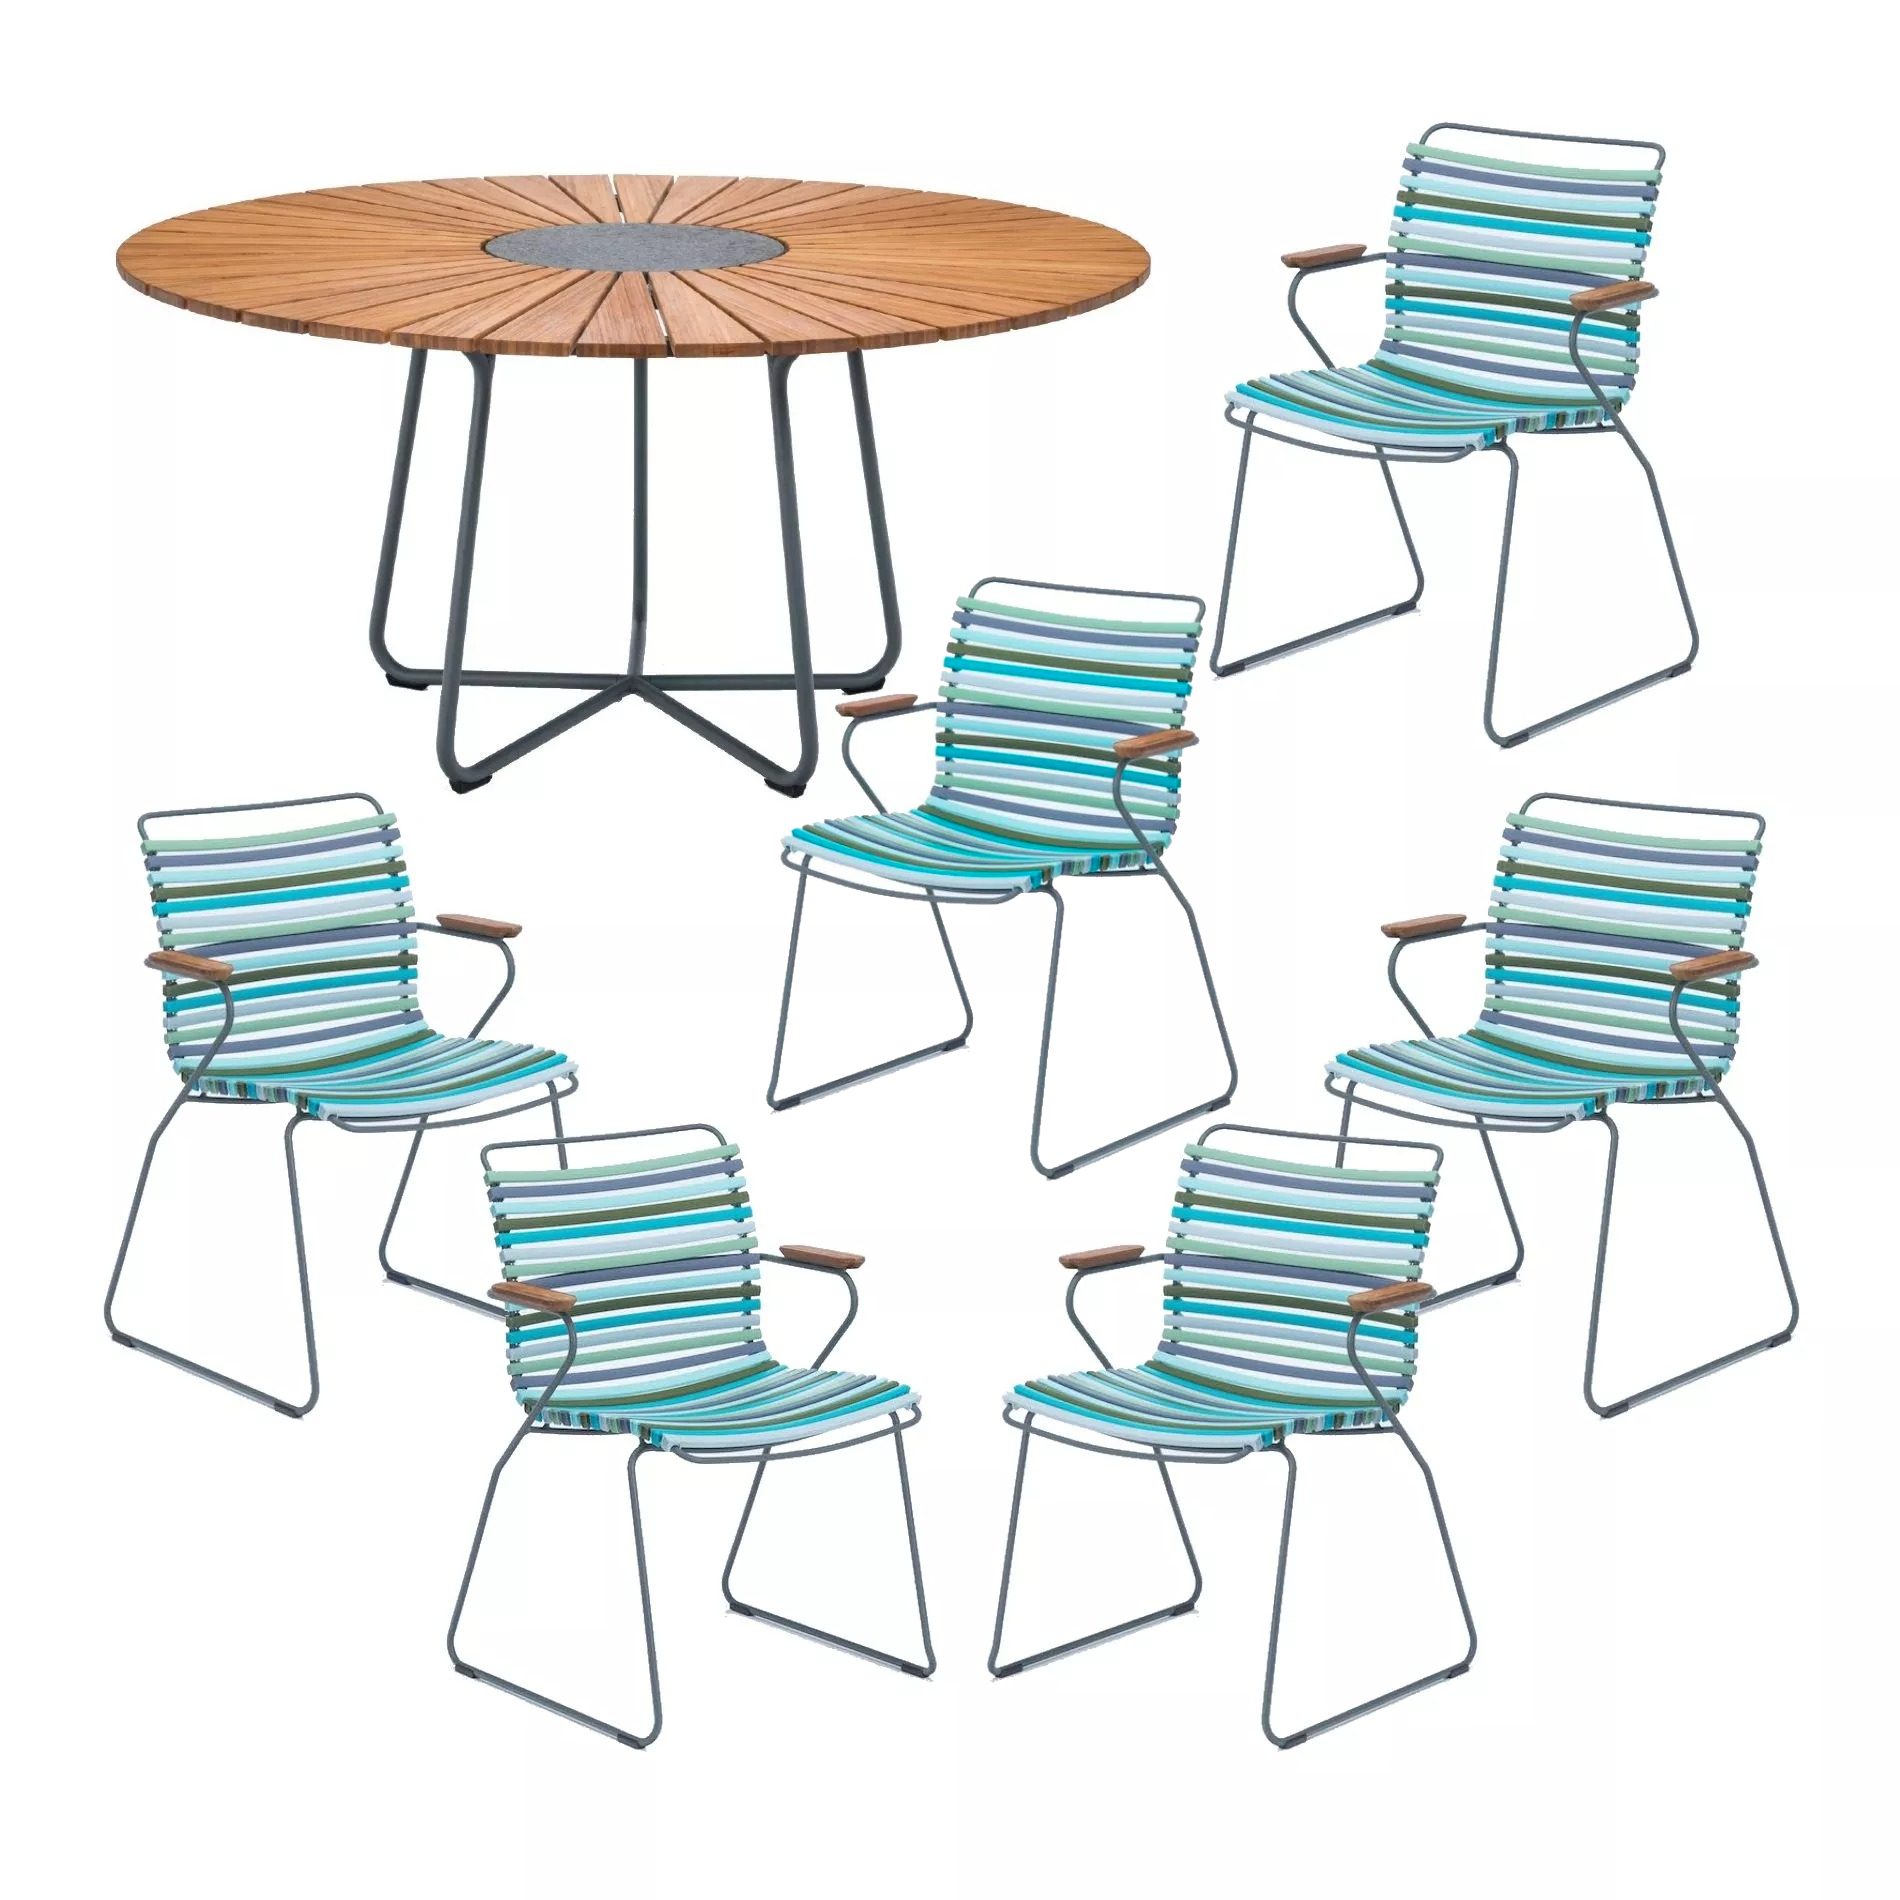 Houe Gartenmöbel-Set mit Tisch "Circle" Ø 150 cm und 6x Stapelsessel "Click", Lamellen multicolor 2 (kühle Farben), Tischplatte Bambus